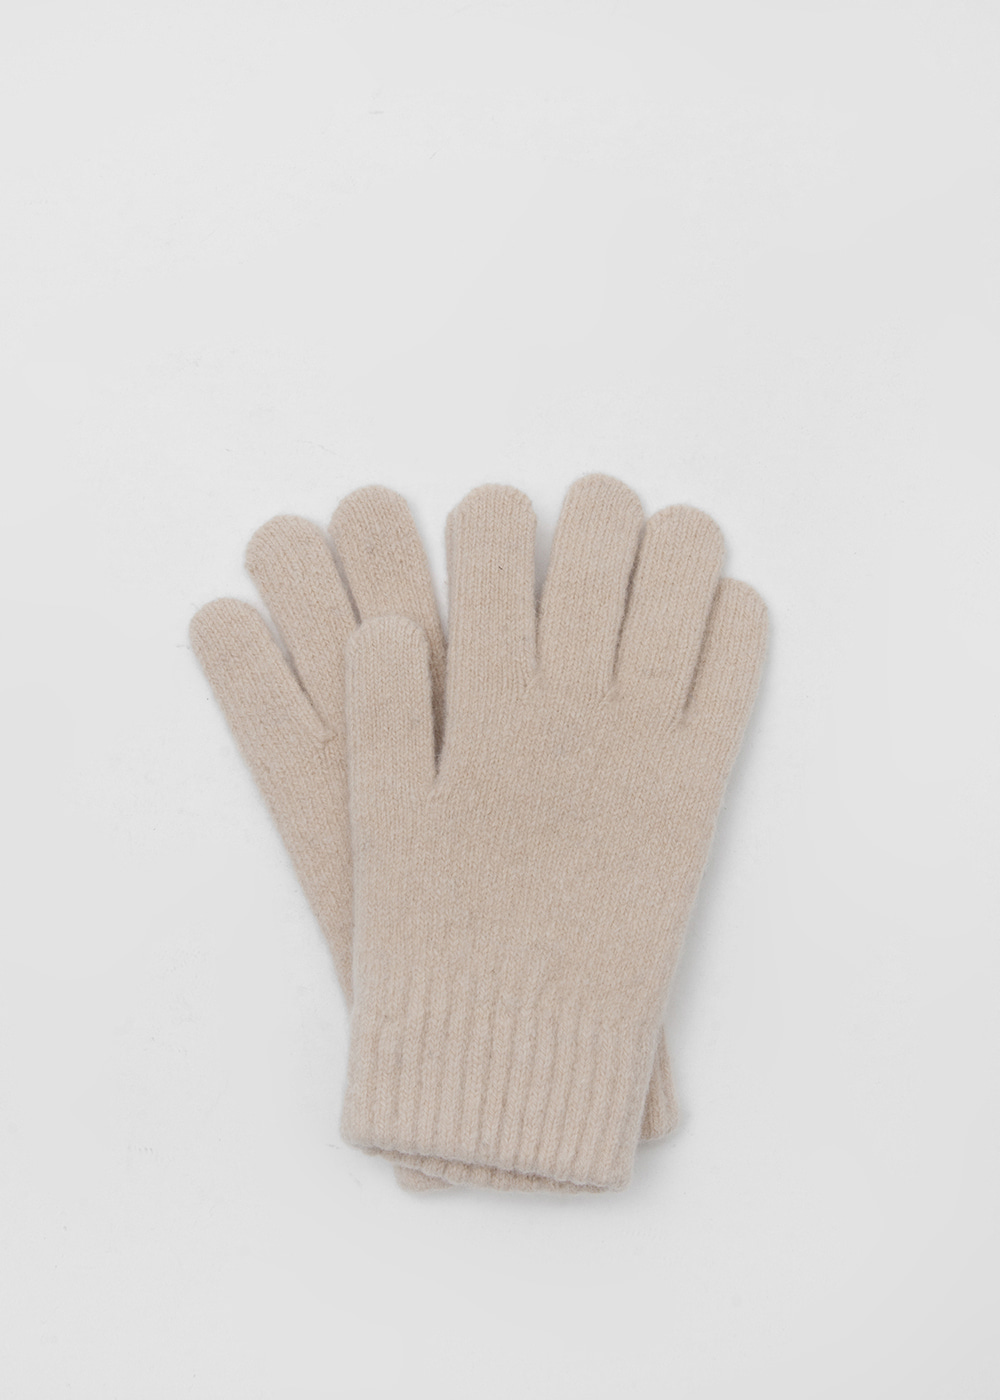 Cozy knit gloves